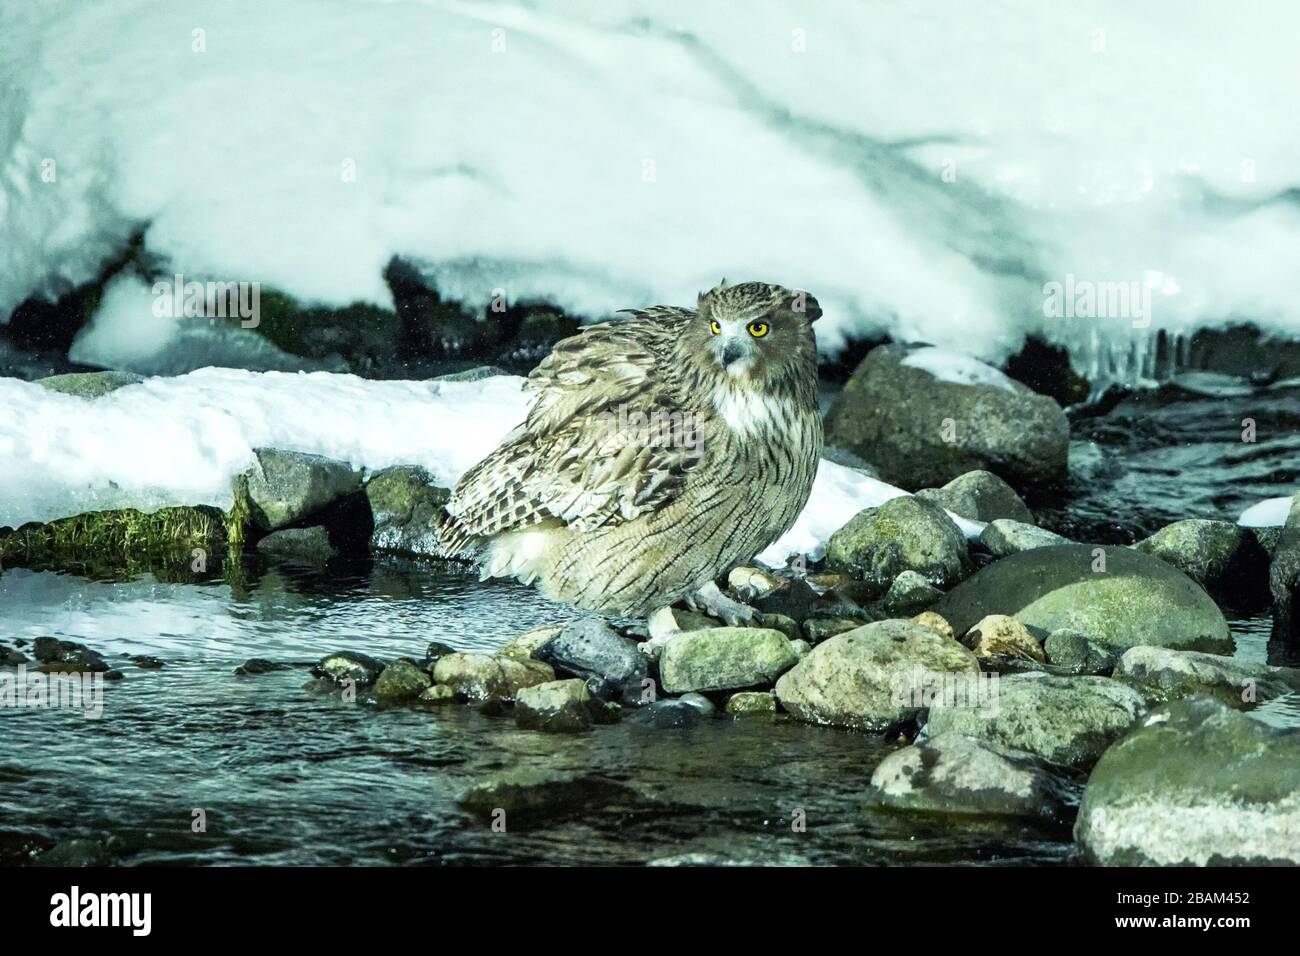 La chouette de poissons de Blakiston, la chasse aux oiseaux dans les poissons dans le ruisseau d'eau froide, la beauté naturelle unique de Hokkaido, Japon, l'aventure d'oiseaux en Asie, grand oiseau de pêche Banque D'Images